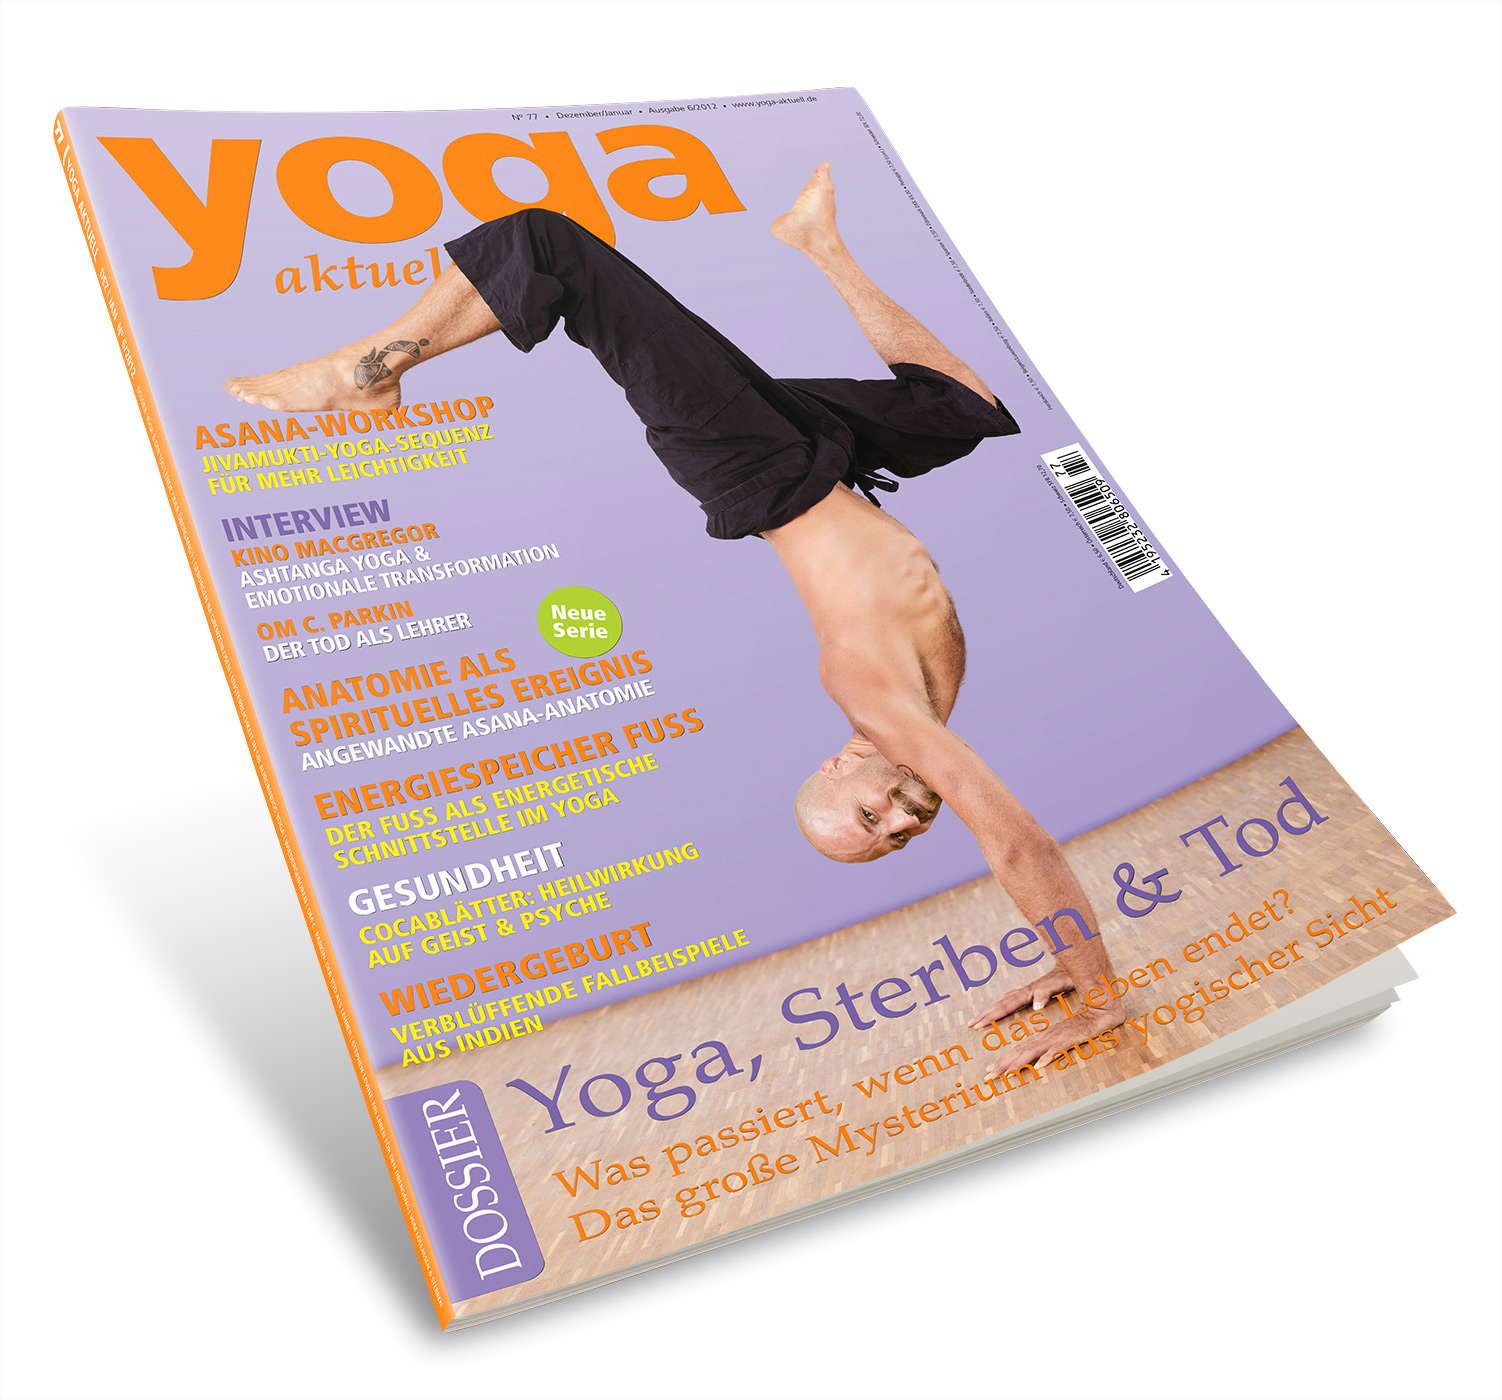 YOGISHOP, Yoga Aktuell 77 - 06/2012